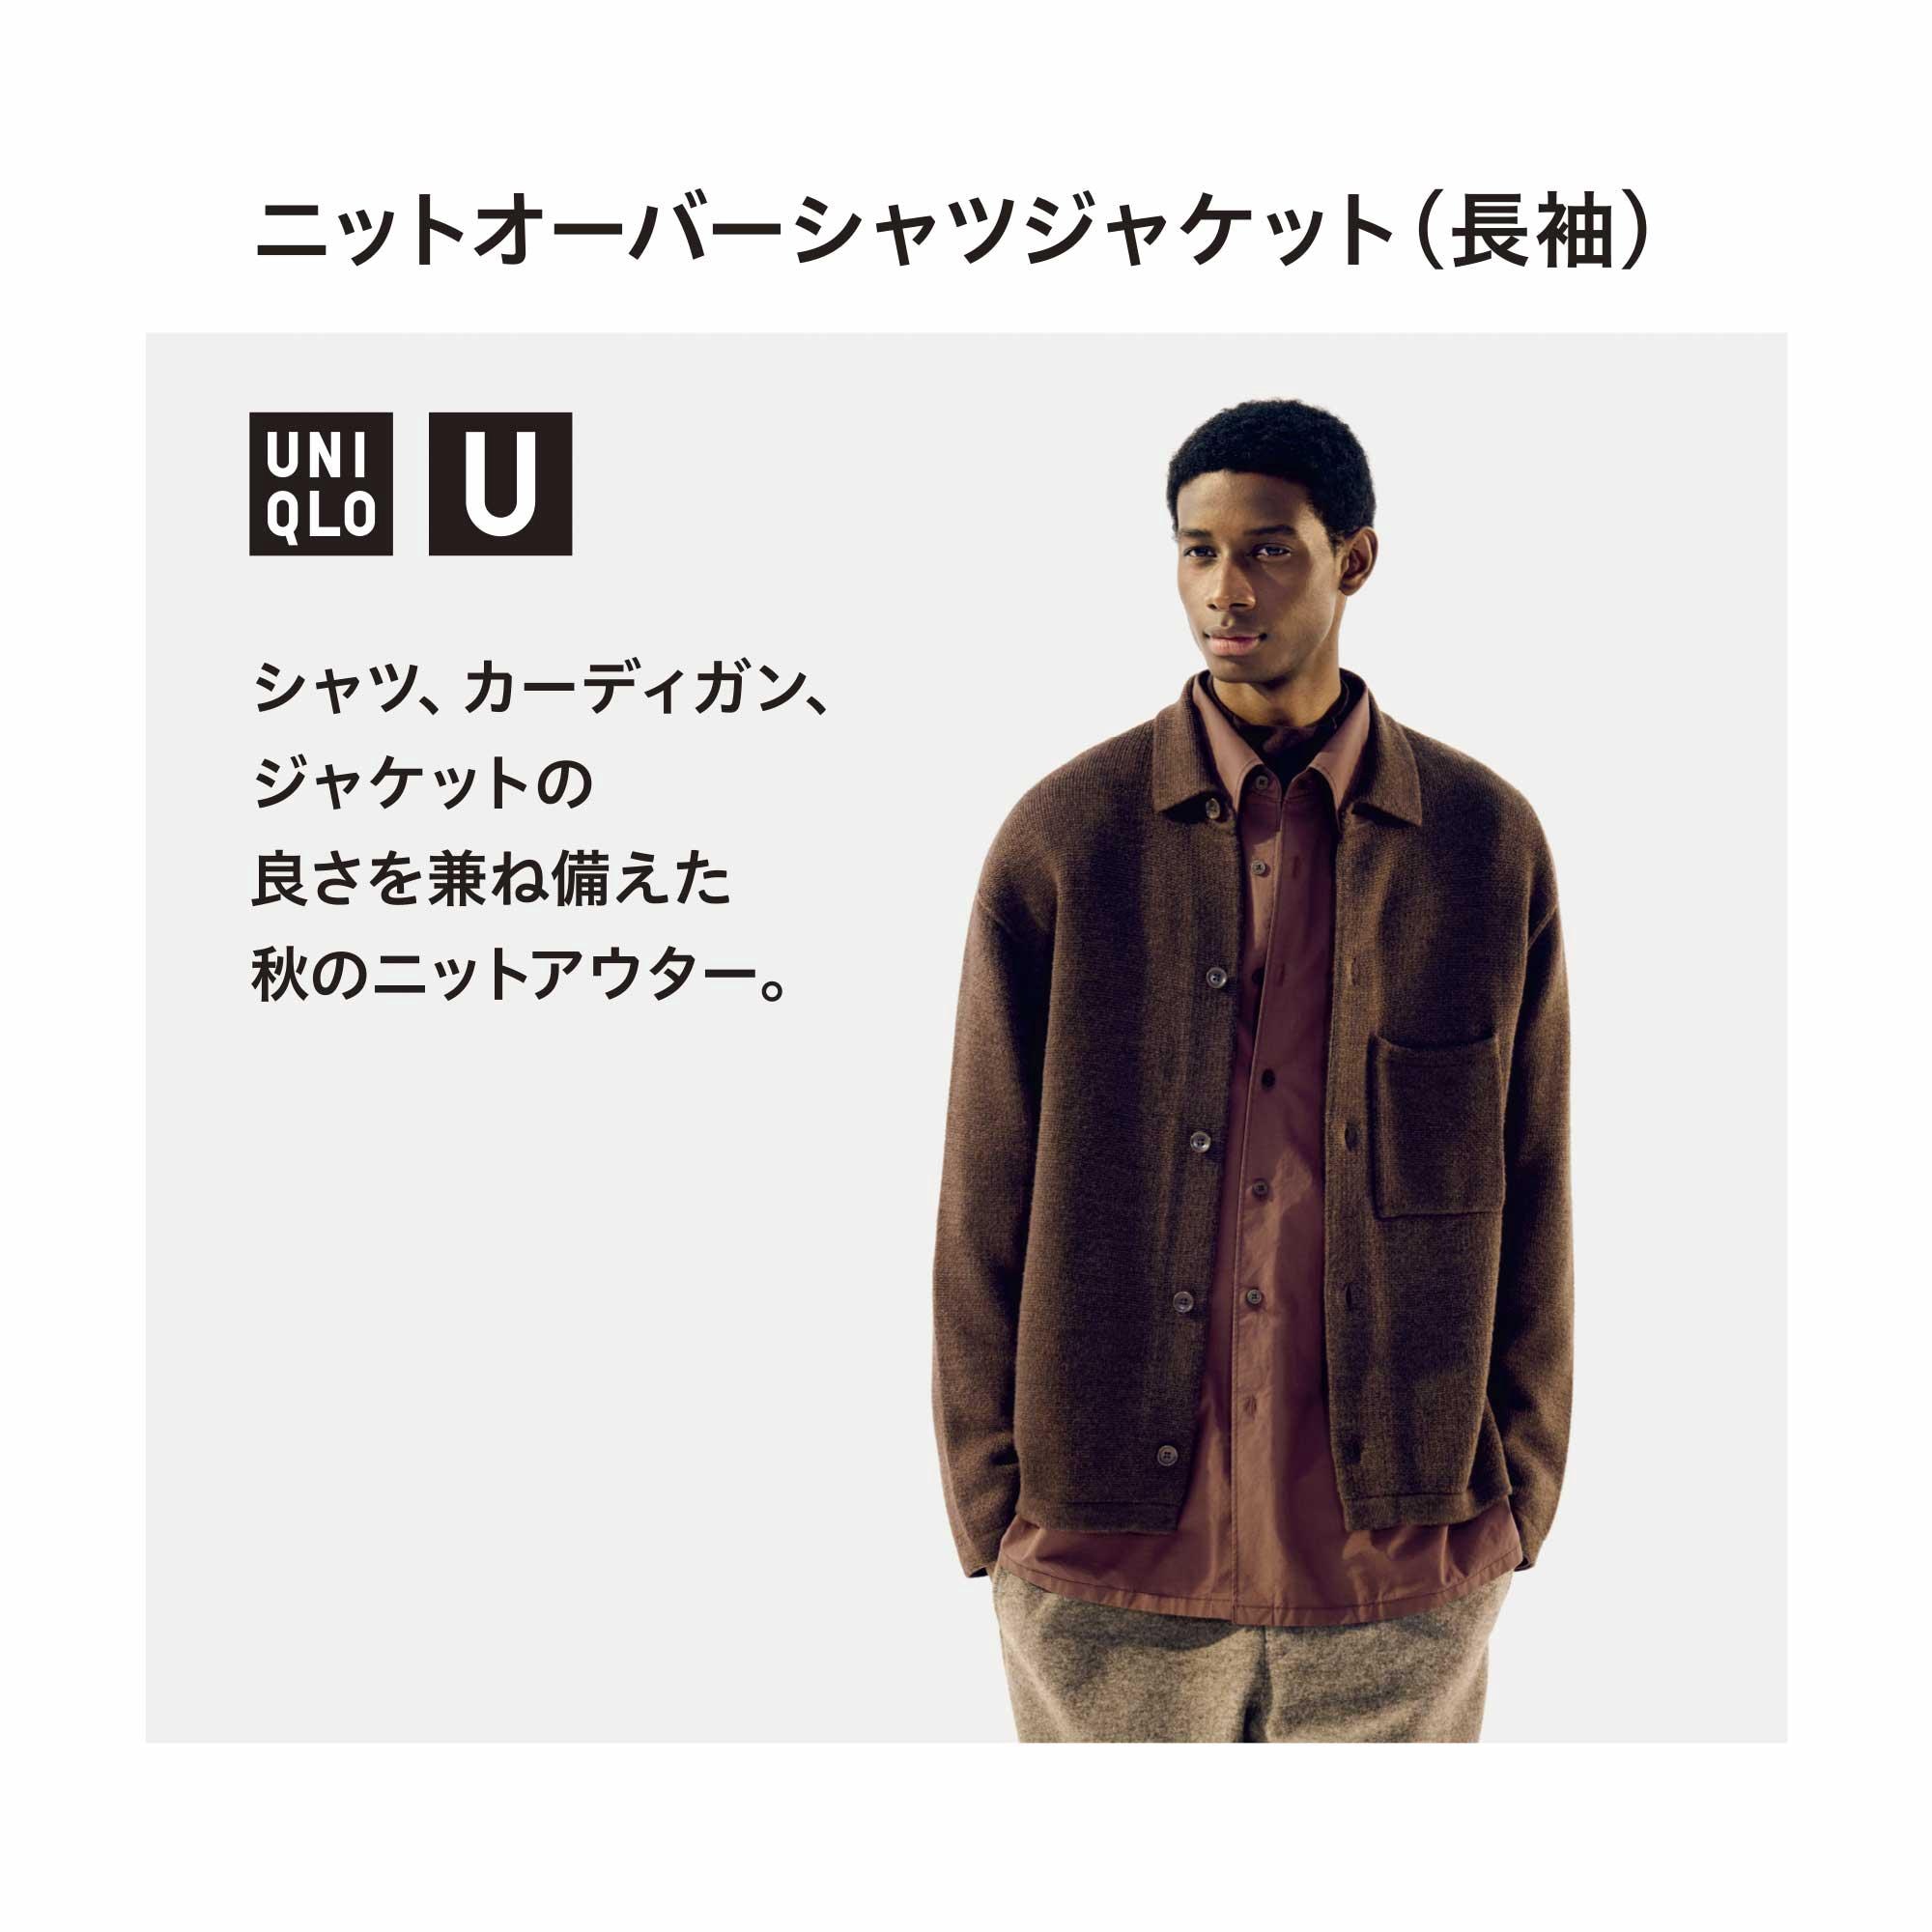 ユニクロU ニットオーバーサイズシャツジャケット M-